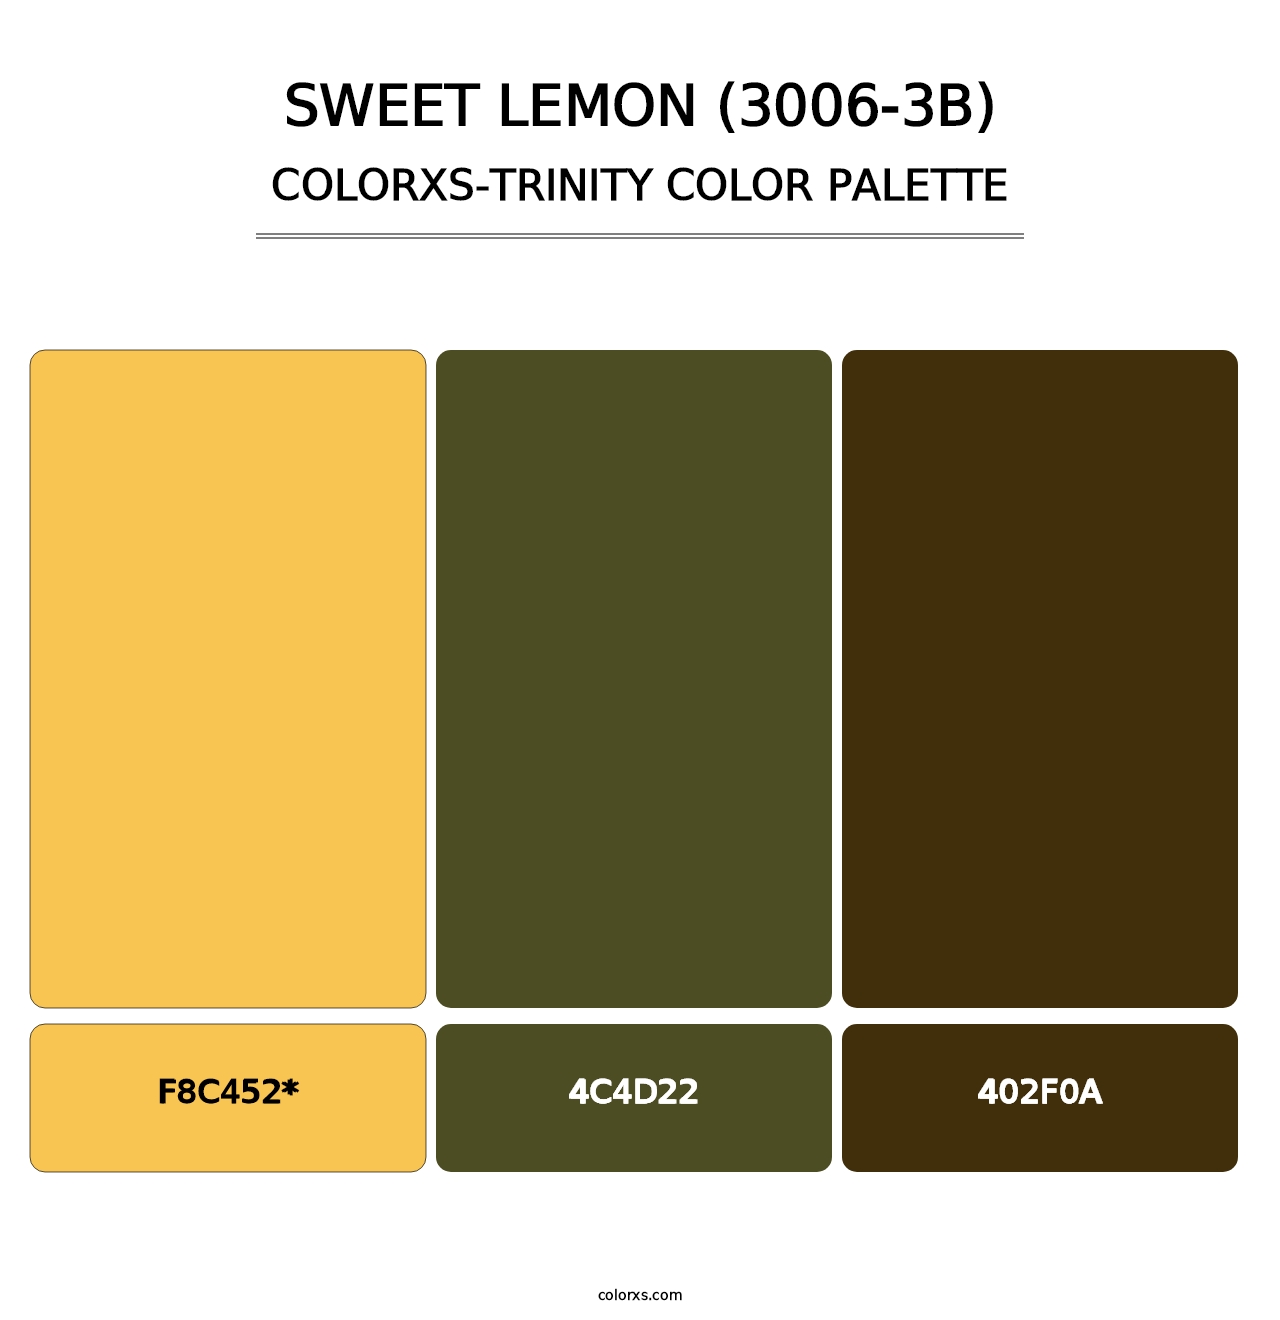 Sweet Lemon (3006-3B) - Colorxs Trinity Palette